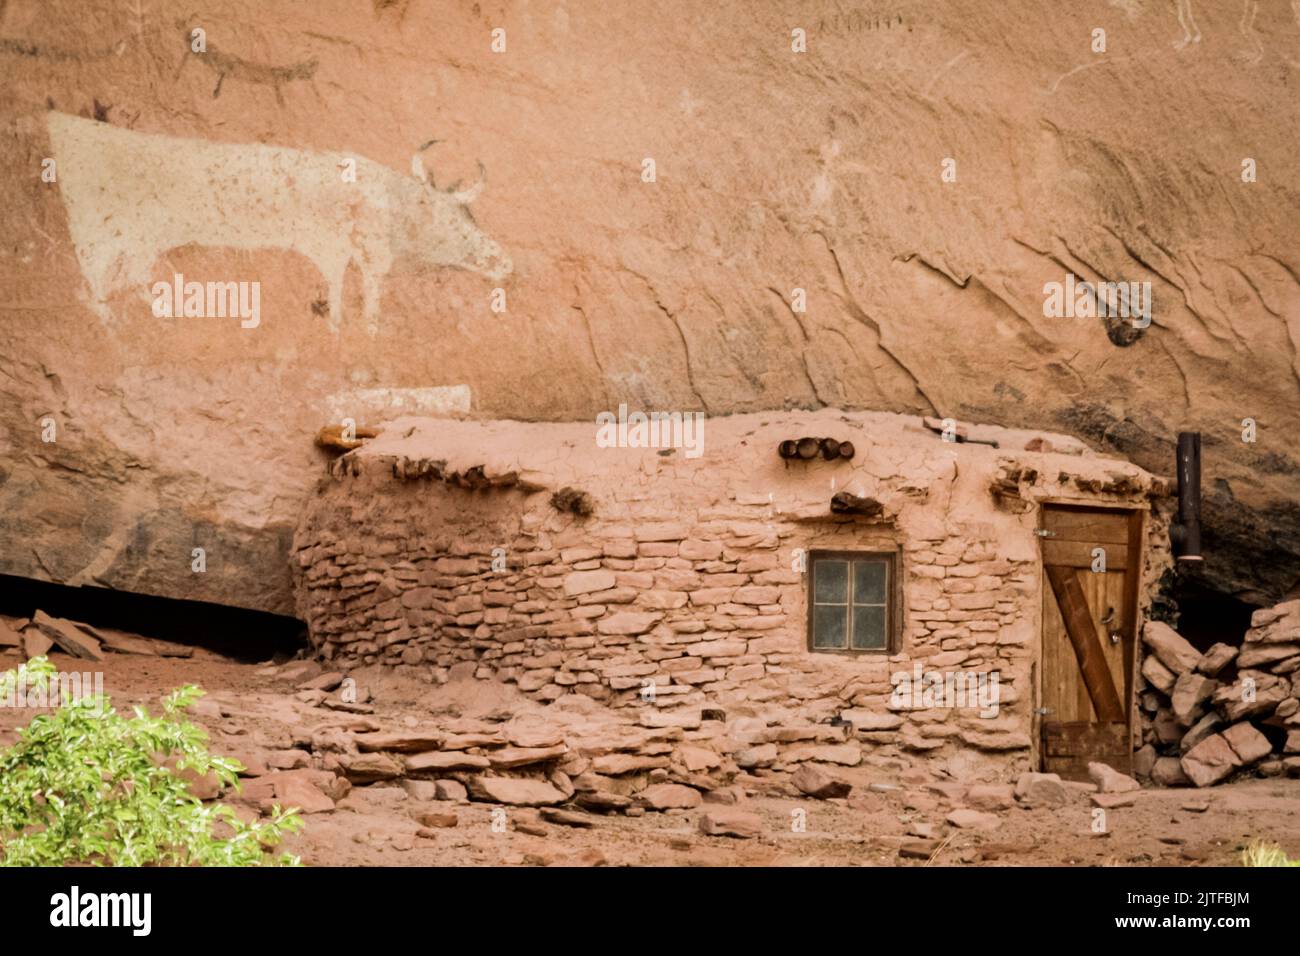 Cañón de Chelley, Arizona. EE.UU. Nación Navajo. Petroglifo y antigua vivienda de adobe. Foto de stock